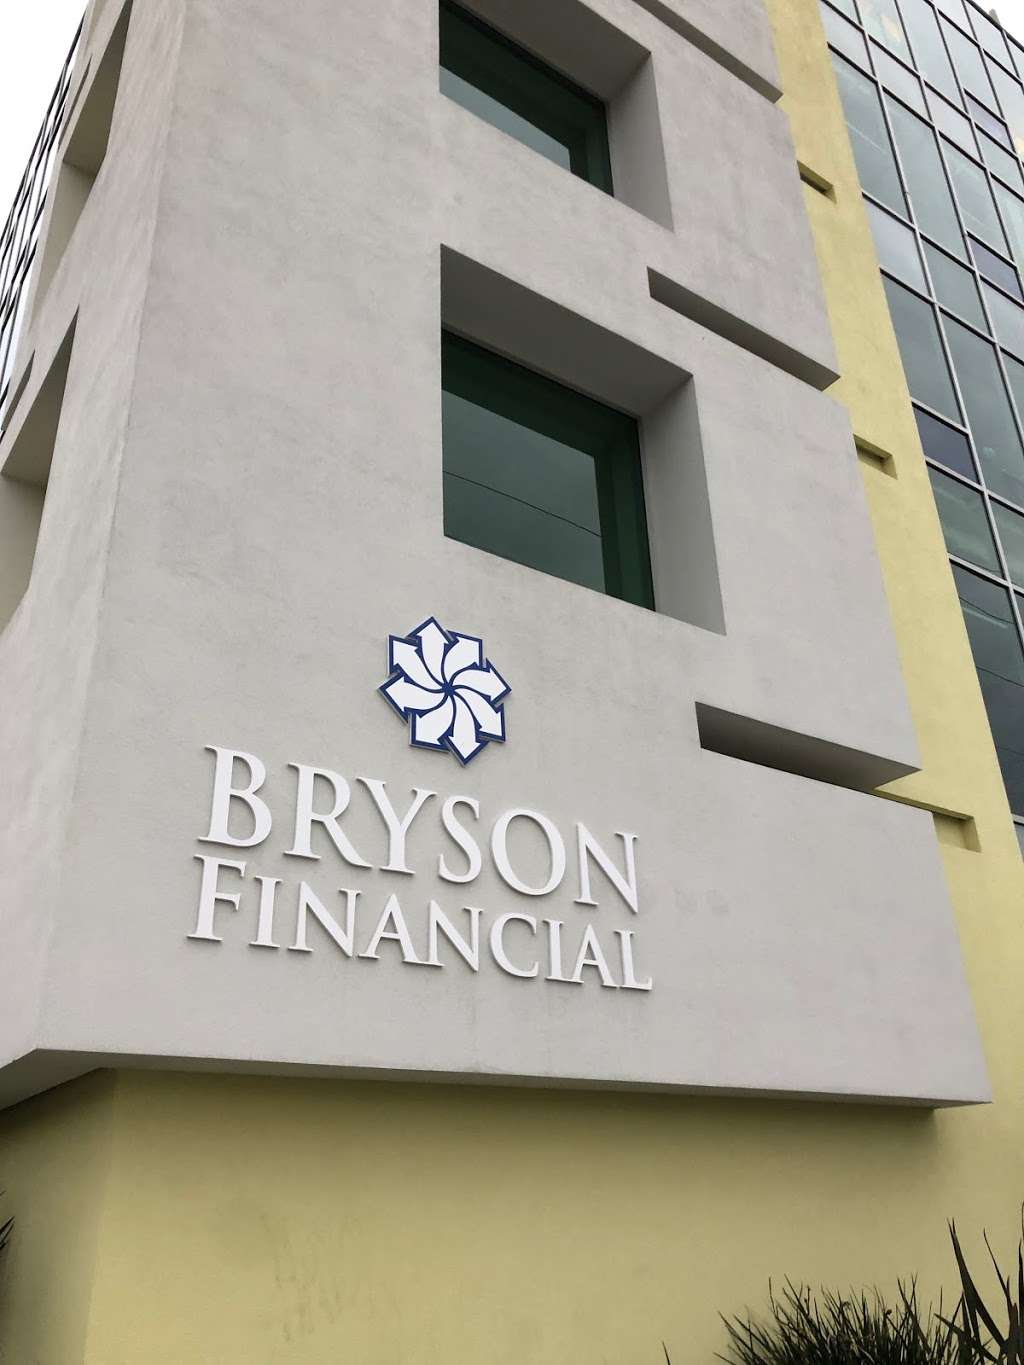 Bryson Financial Inc | 3777 Long Beach Blvd, 5, Long Beach, CA 90807 | Phone: (562) 435-4267